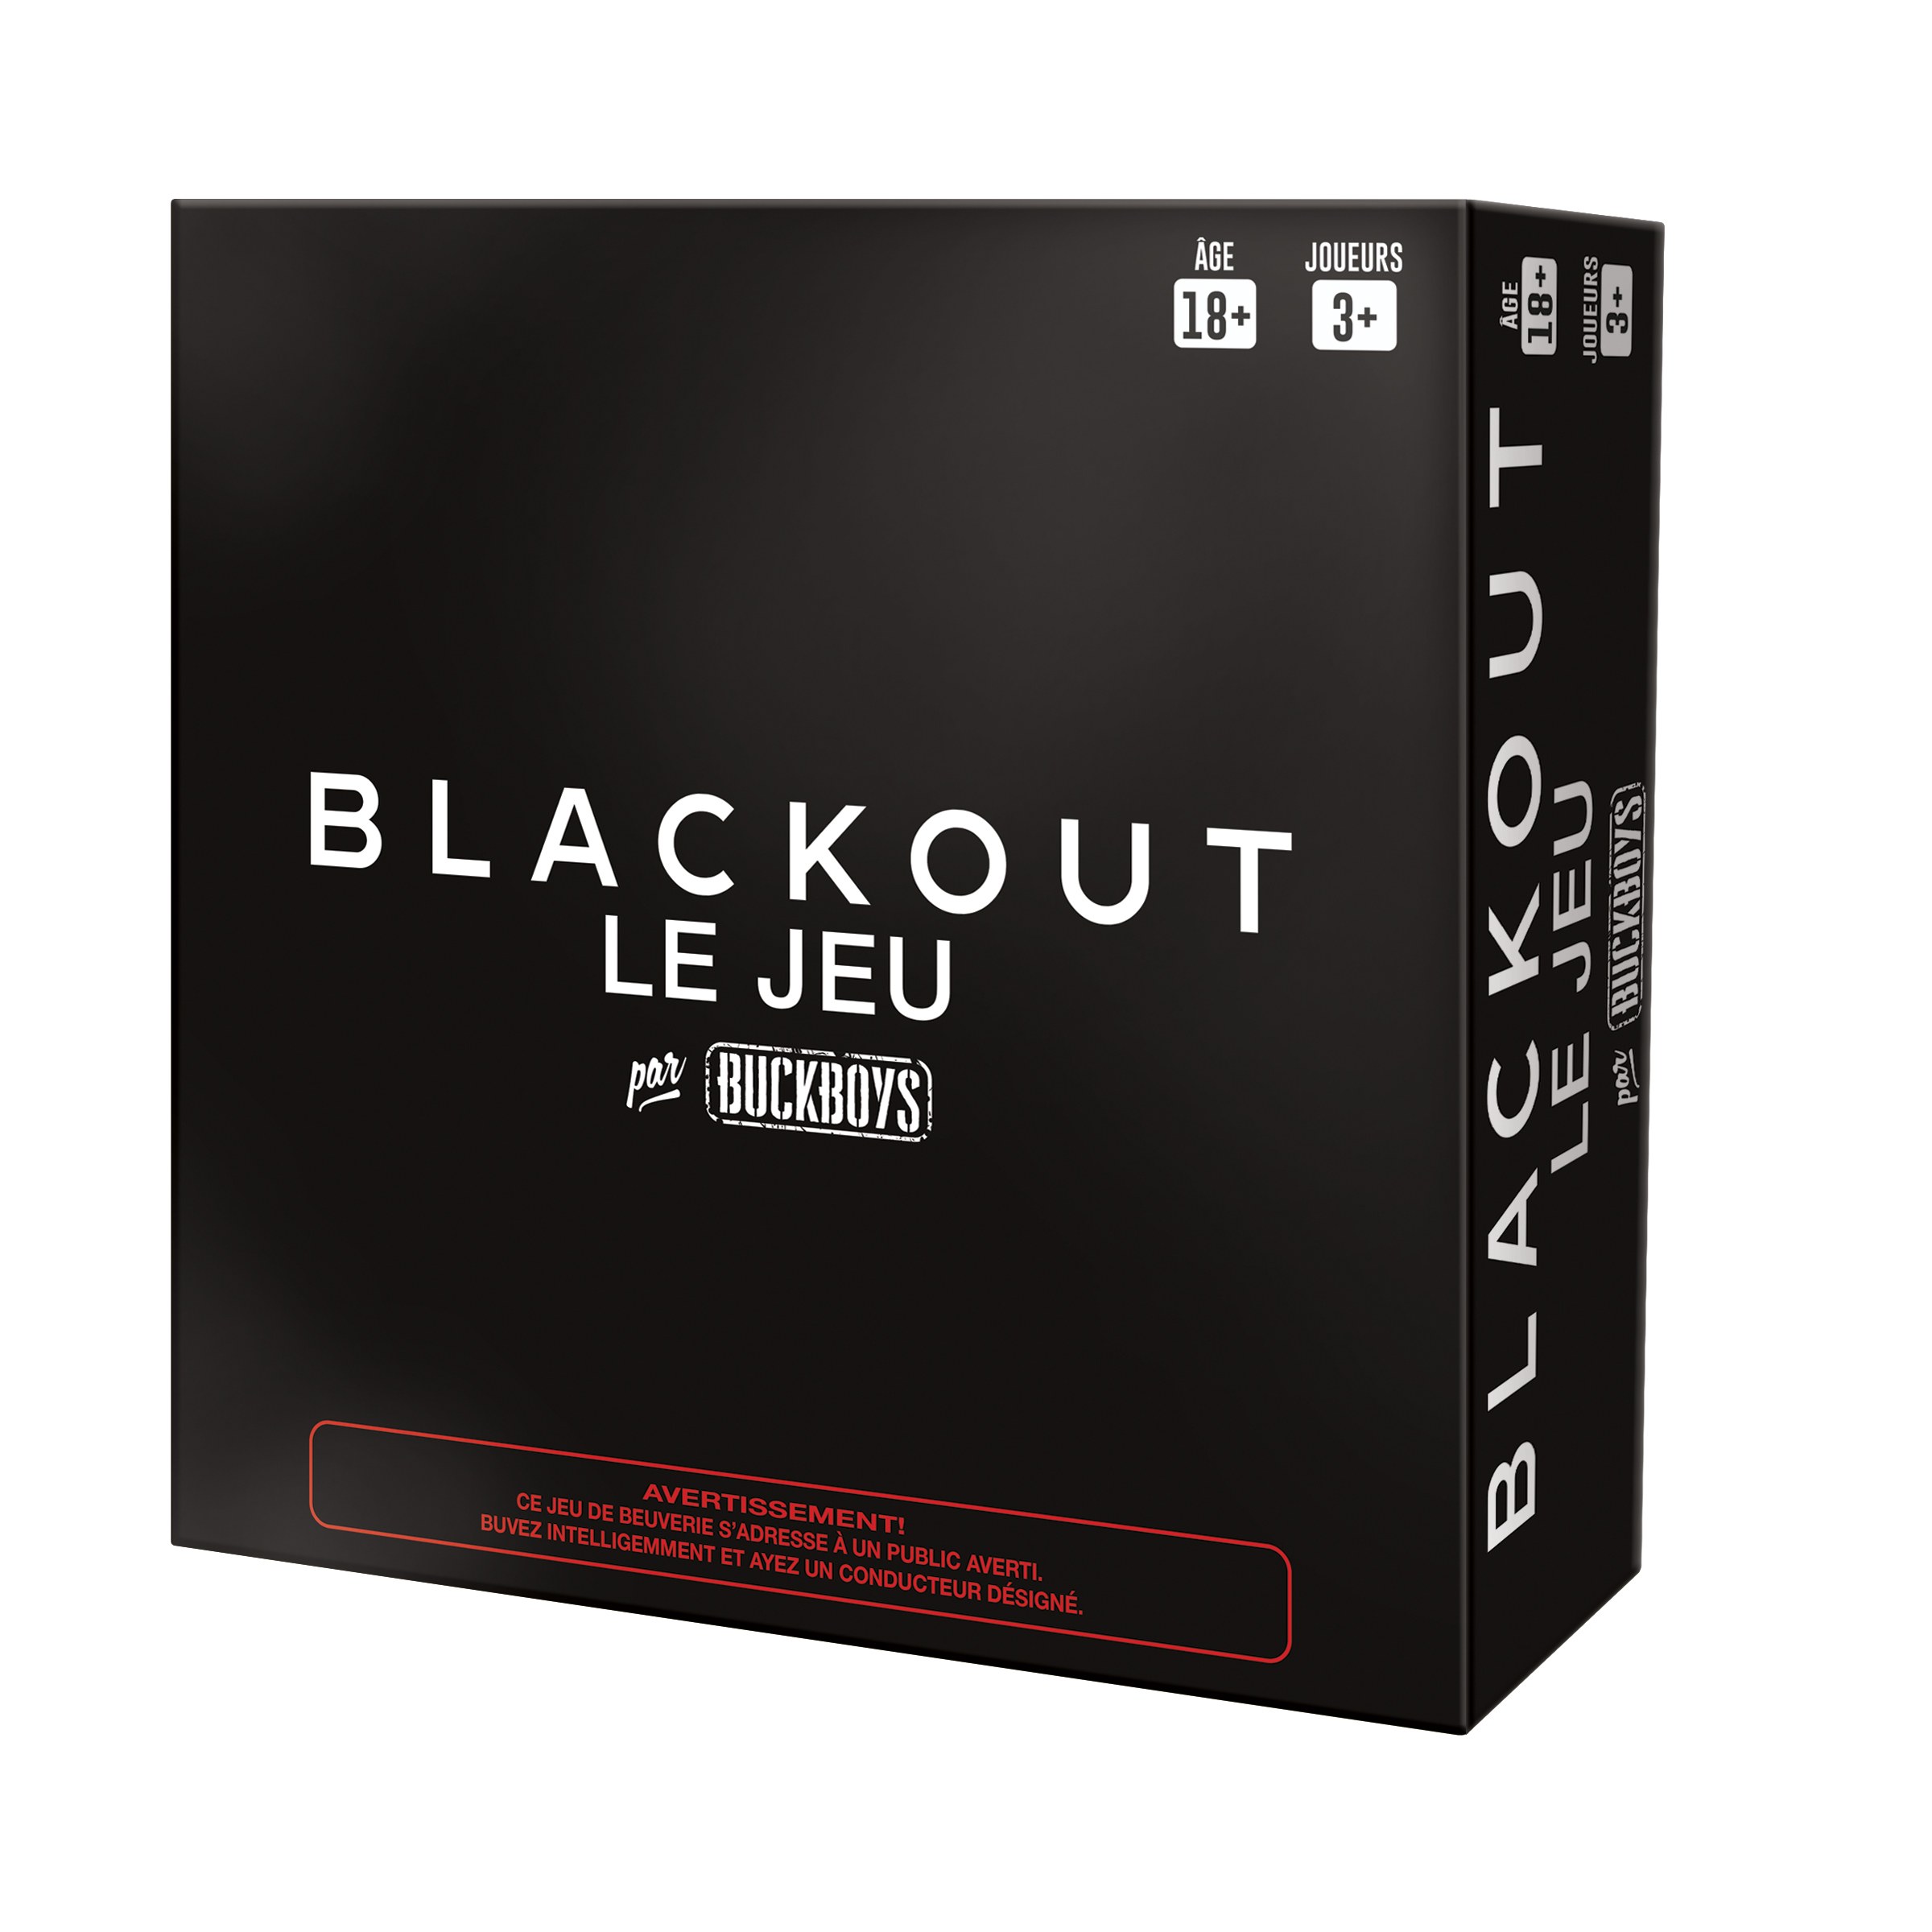 Blackout Le Jeu - Buckboys